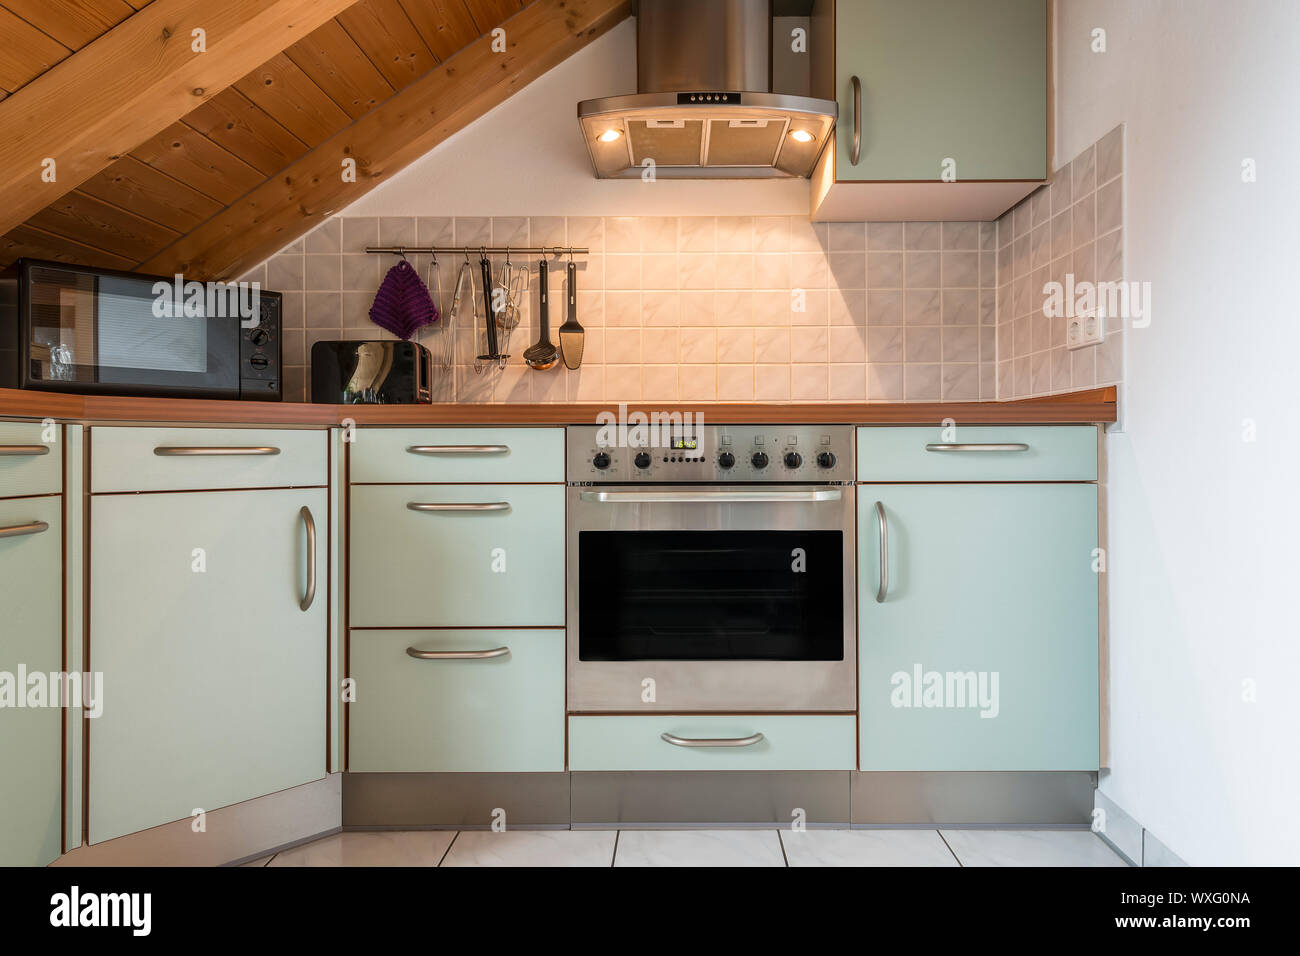 Küche einer Wohnung mit Ofen, Mikrowelle, Herd, Dunstabzugshaube, Schränke  und Holzdecke Stockfotografie - Alamy